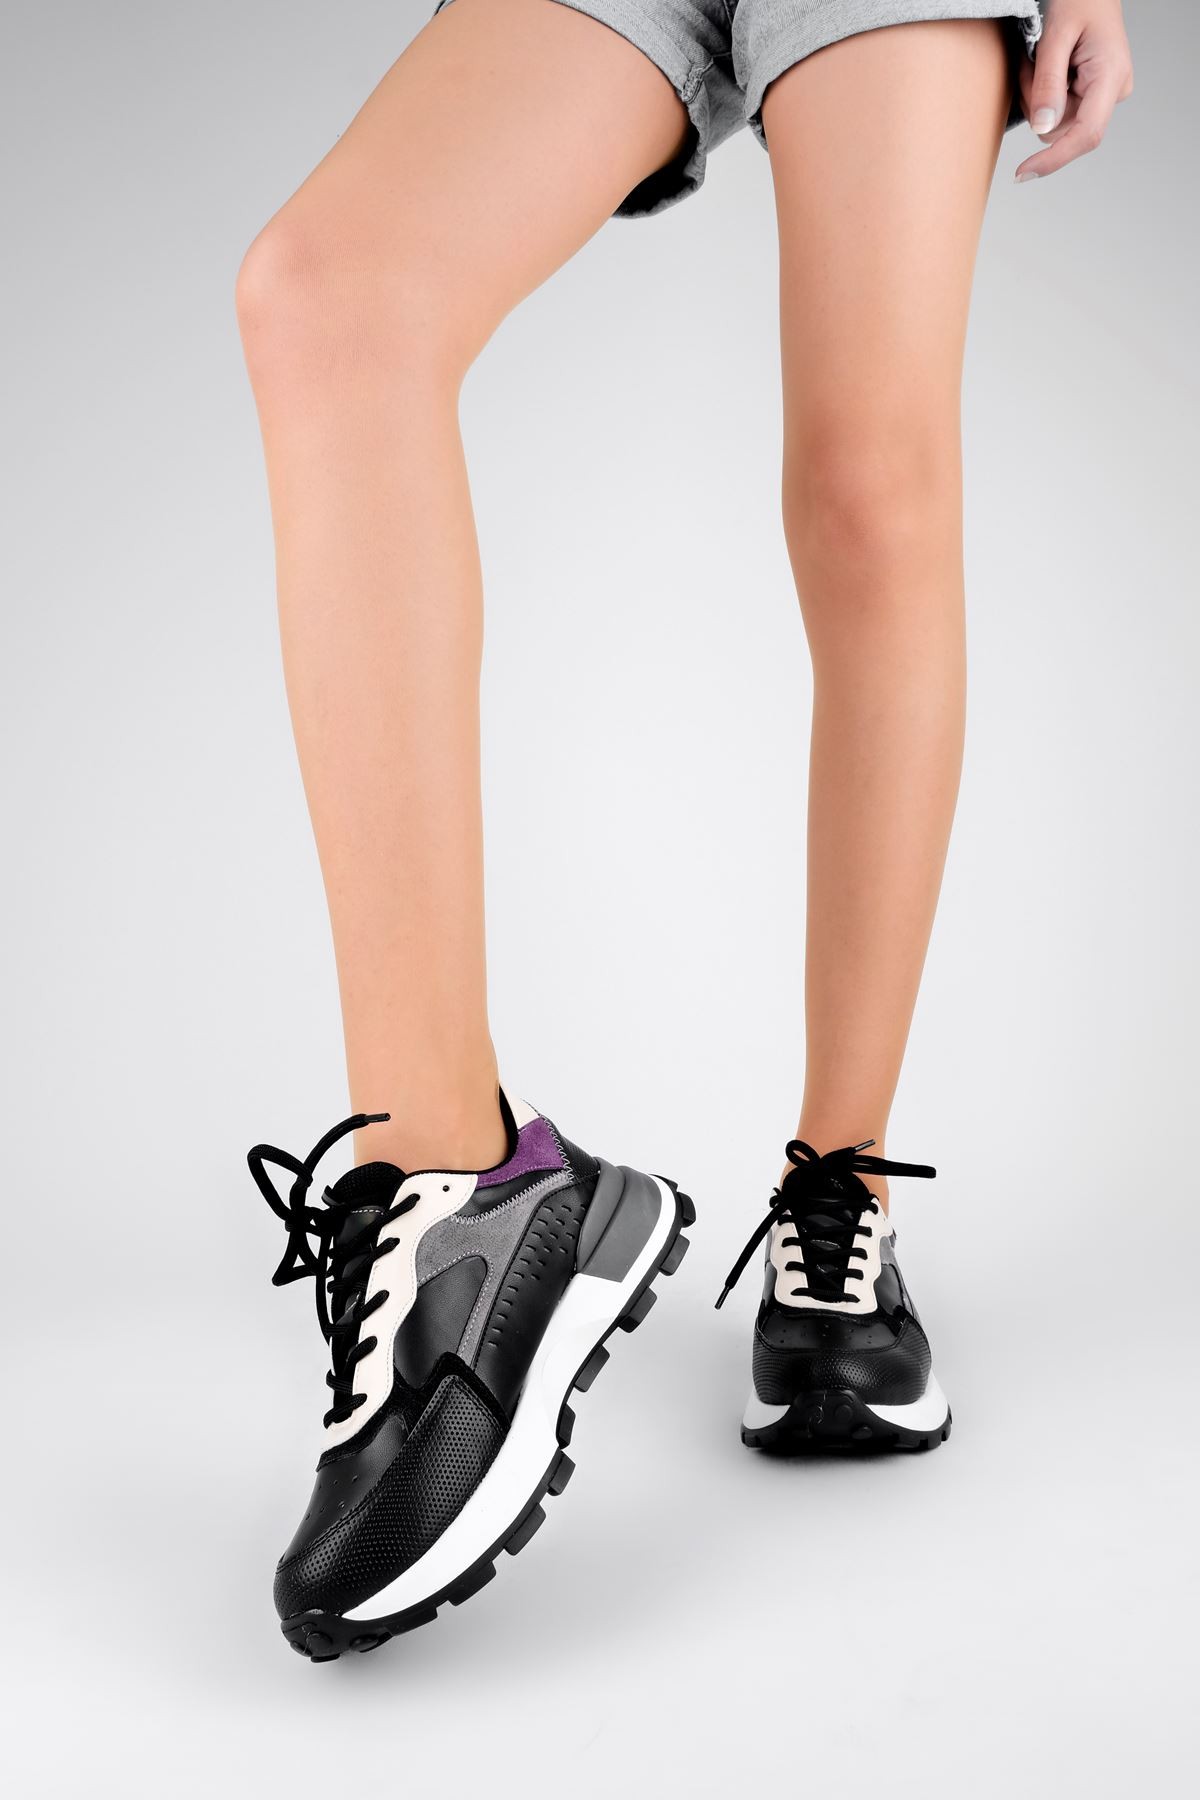 Oldey Kadın Spor Ayakkabı B3171 - Siyah